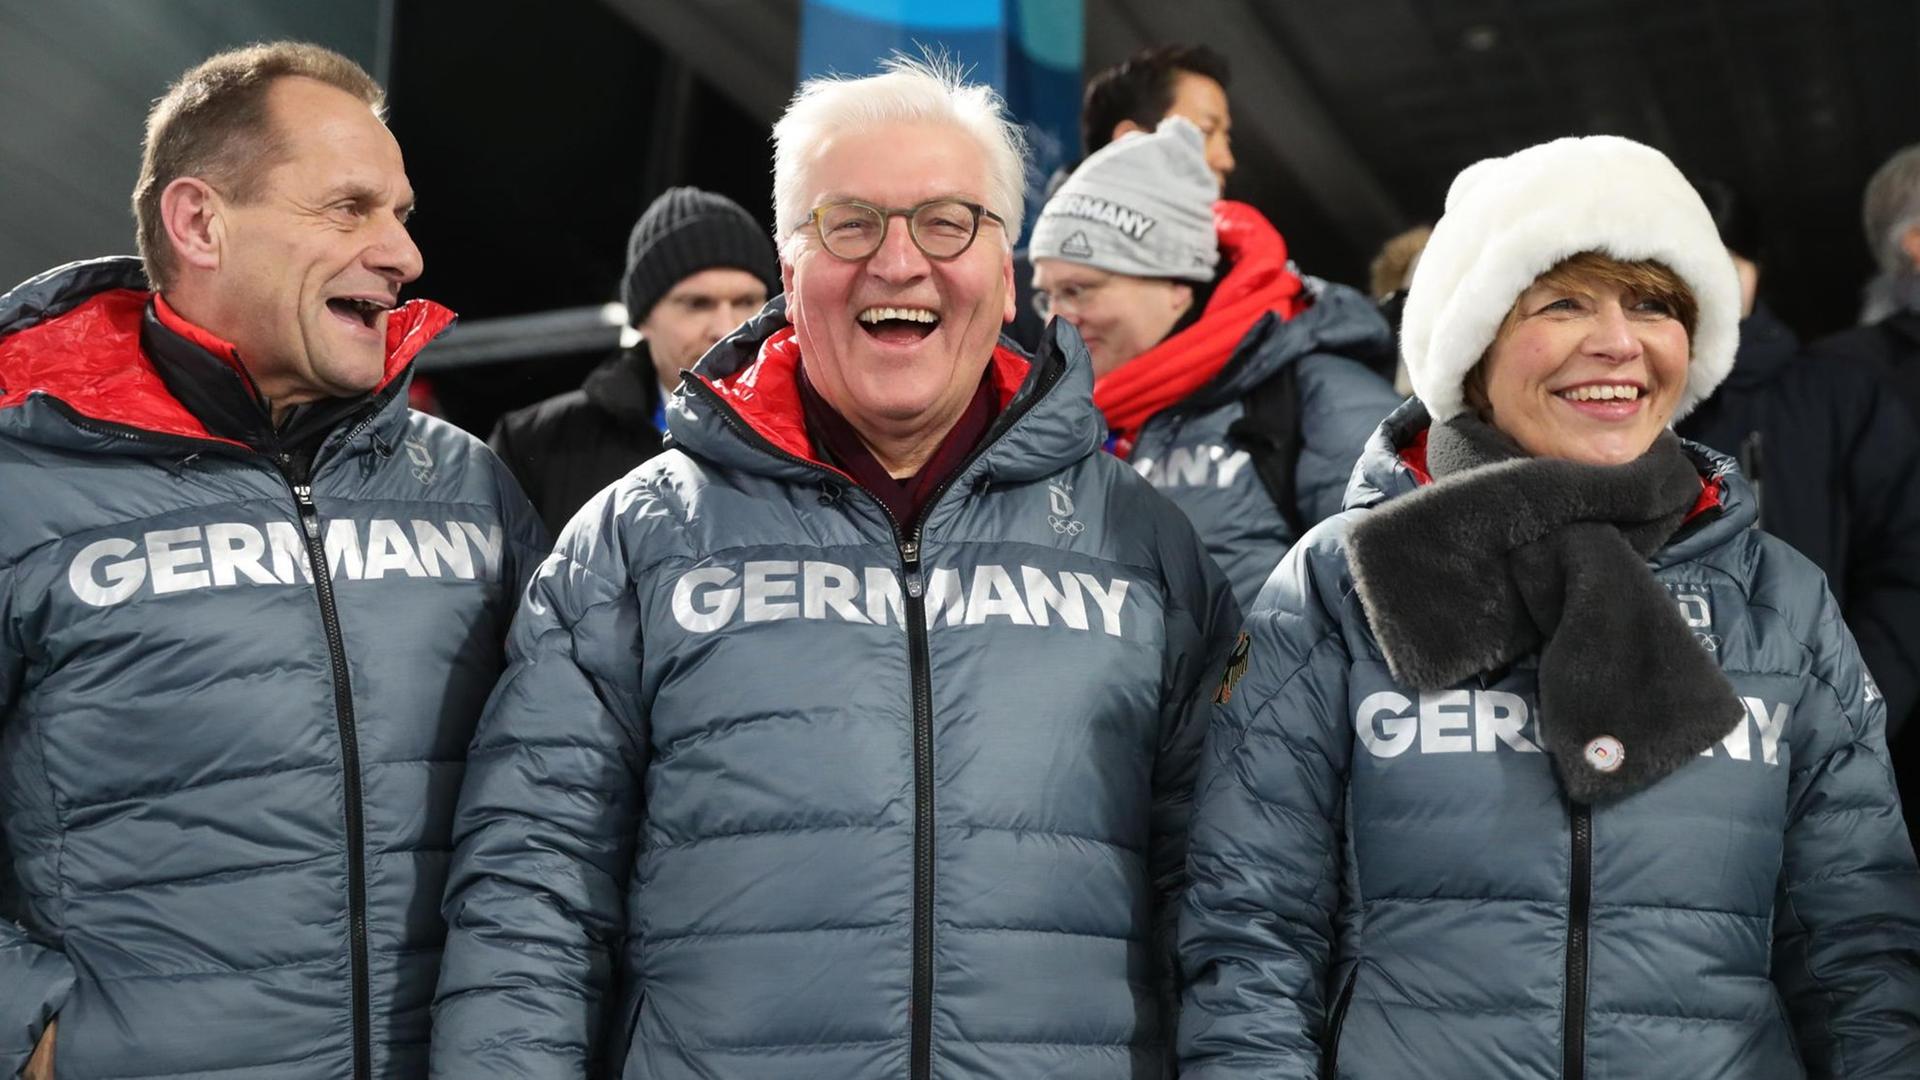 Bundespräsident Frank-Walter Steinmeier lacht mit seiner Frau Elke Büdenbender und Alfons Hörmann, DOSB-Präsident des Deutschen Olympischen Sportbundes, bei der Siegerehrung für Biathletin Dahlmeier.